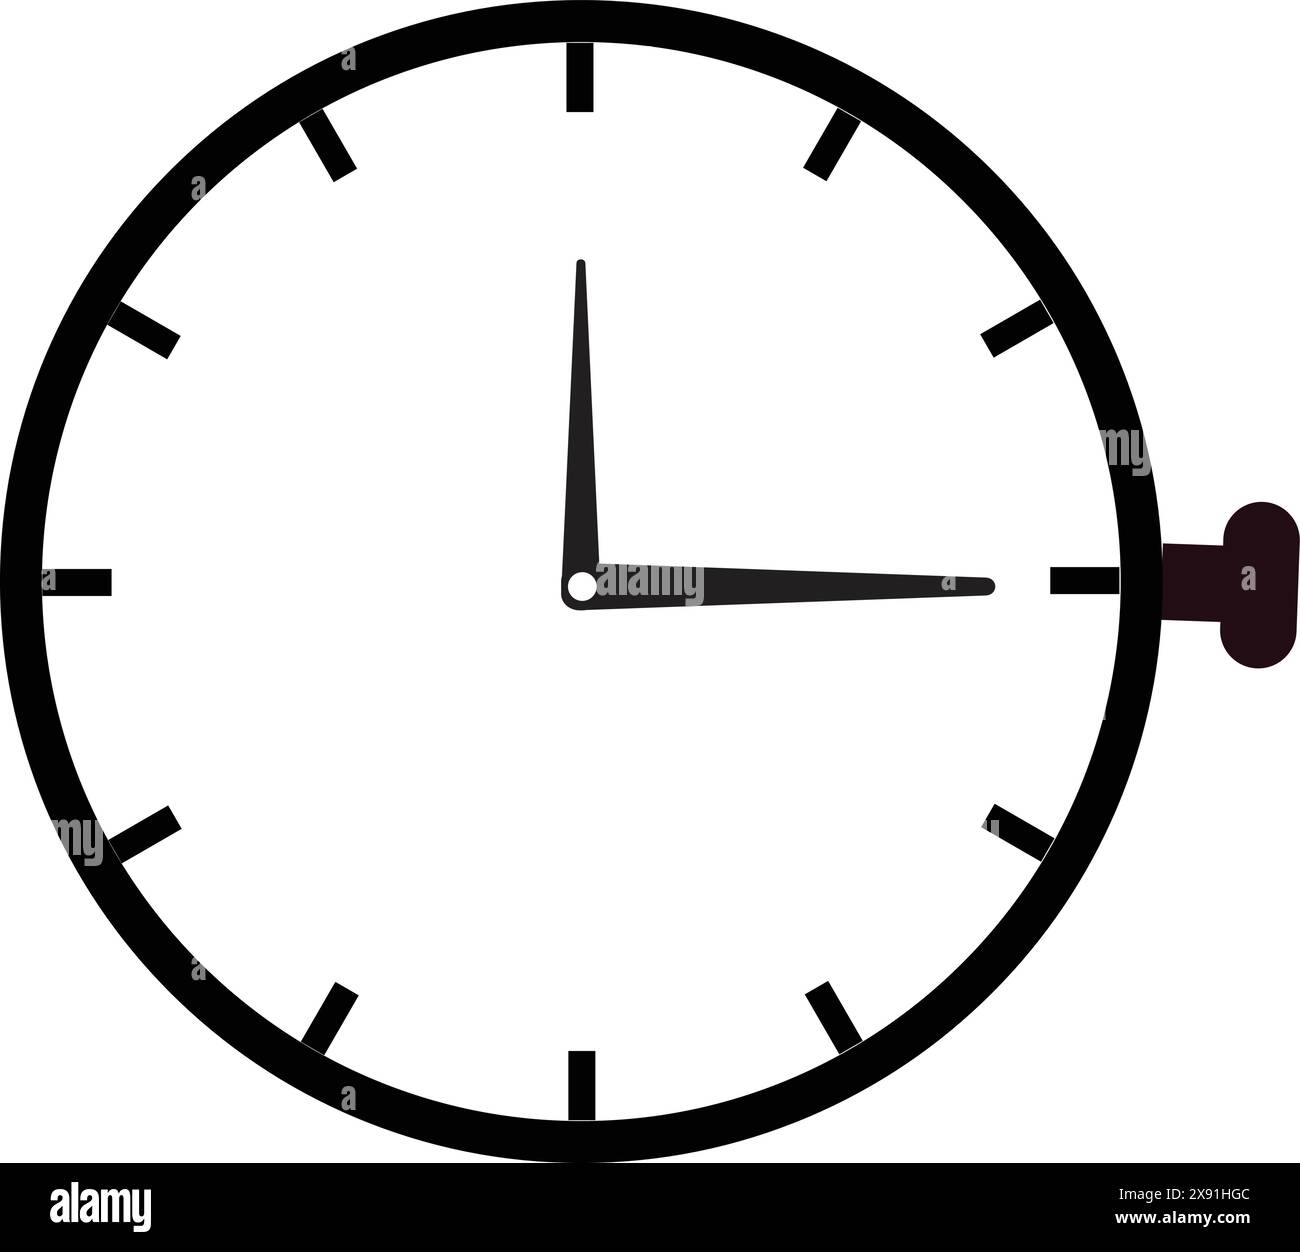 Uhr Schwarz-weiß-Symbol, Uhrensymbol, Zeitwecker, Timer-Symbol, Uhrensymbol, Zeitsymbol Stock Vektor